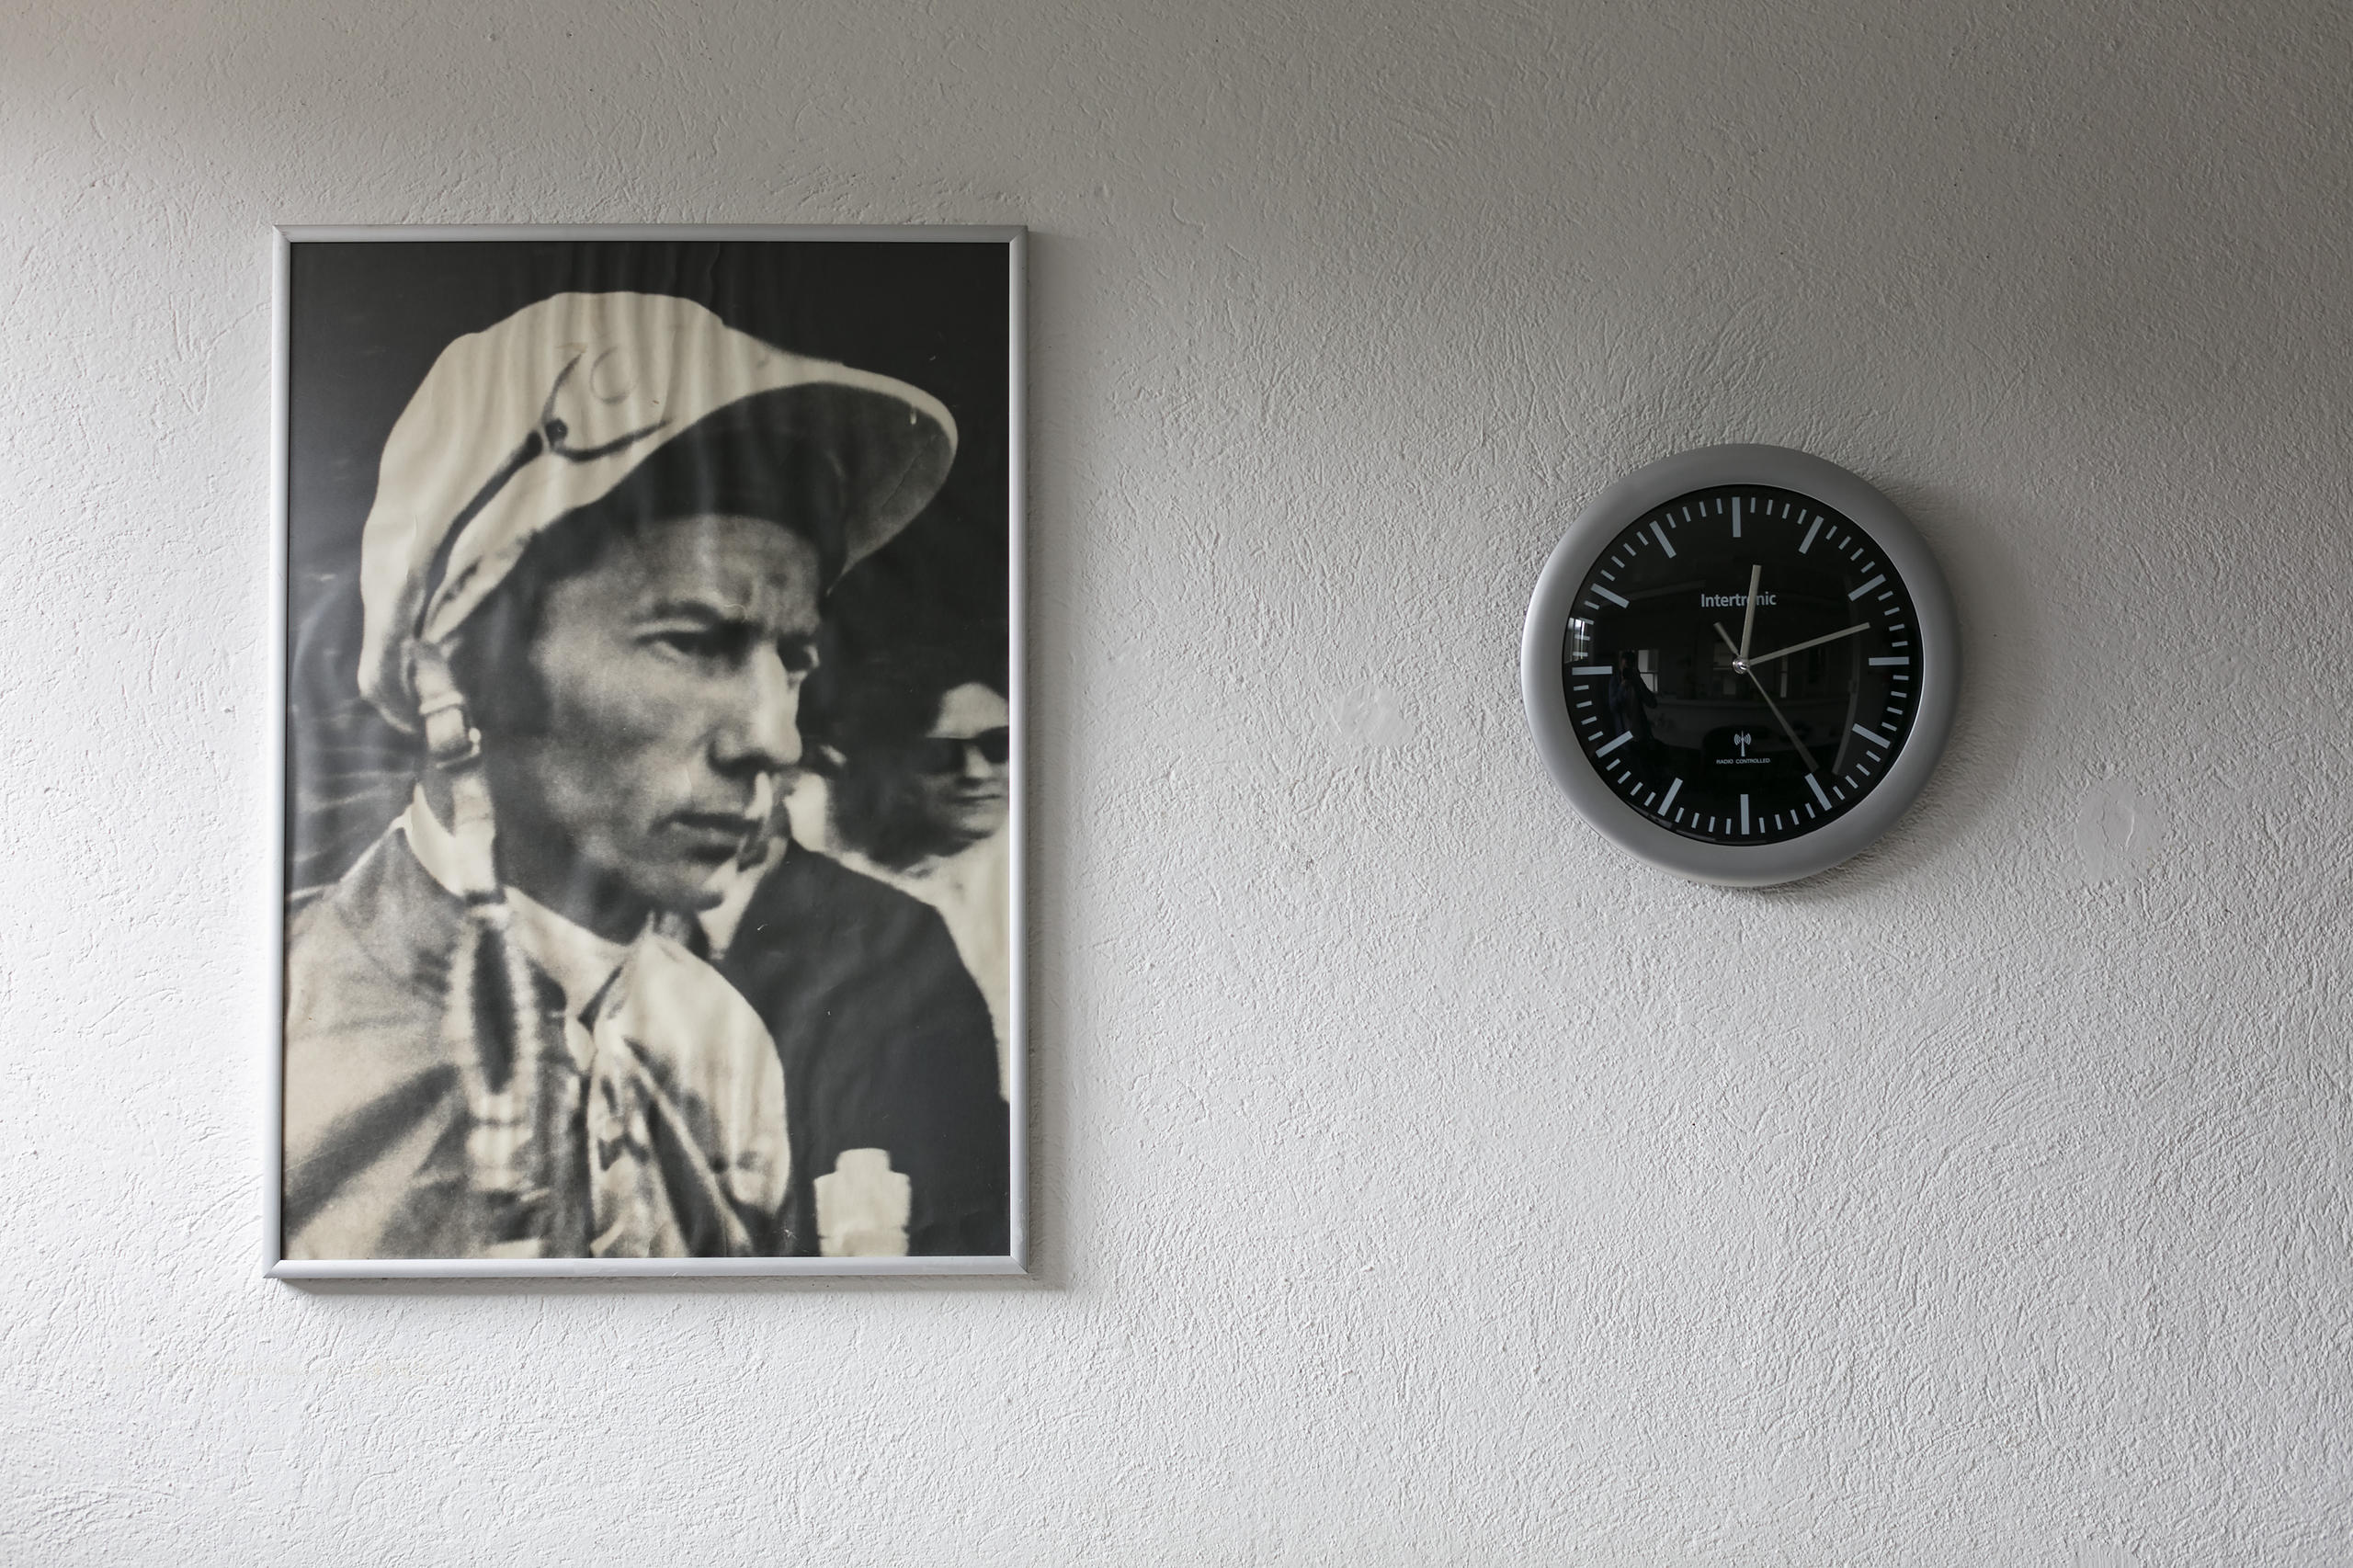 ritratto di un fantino appeso al muro accanto a un orologio